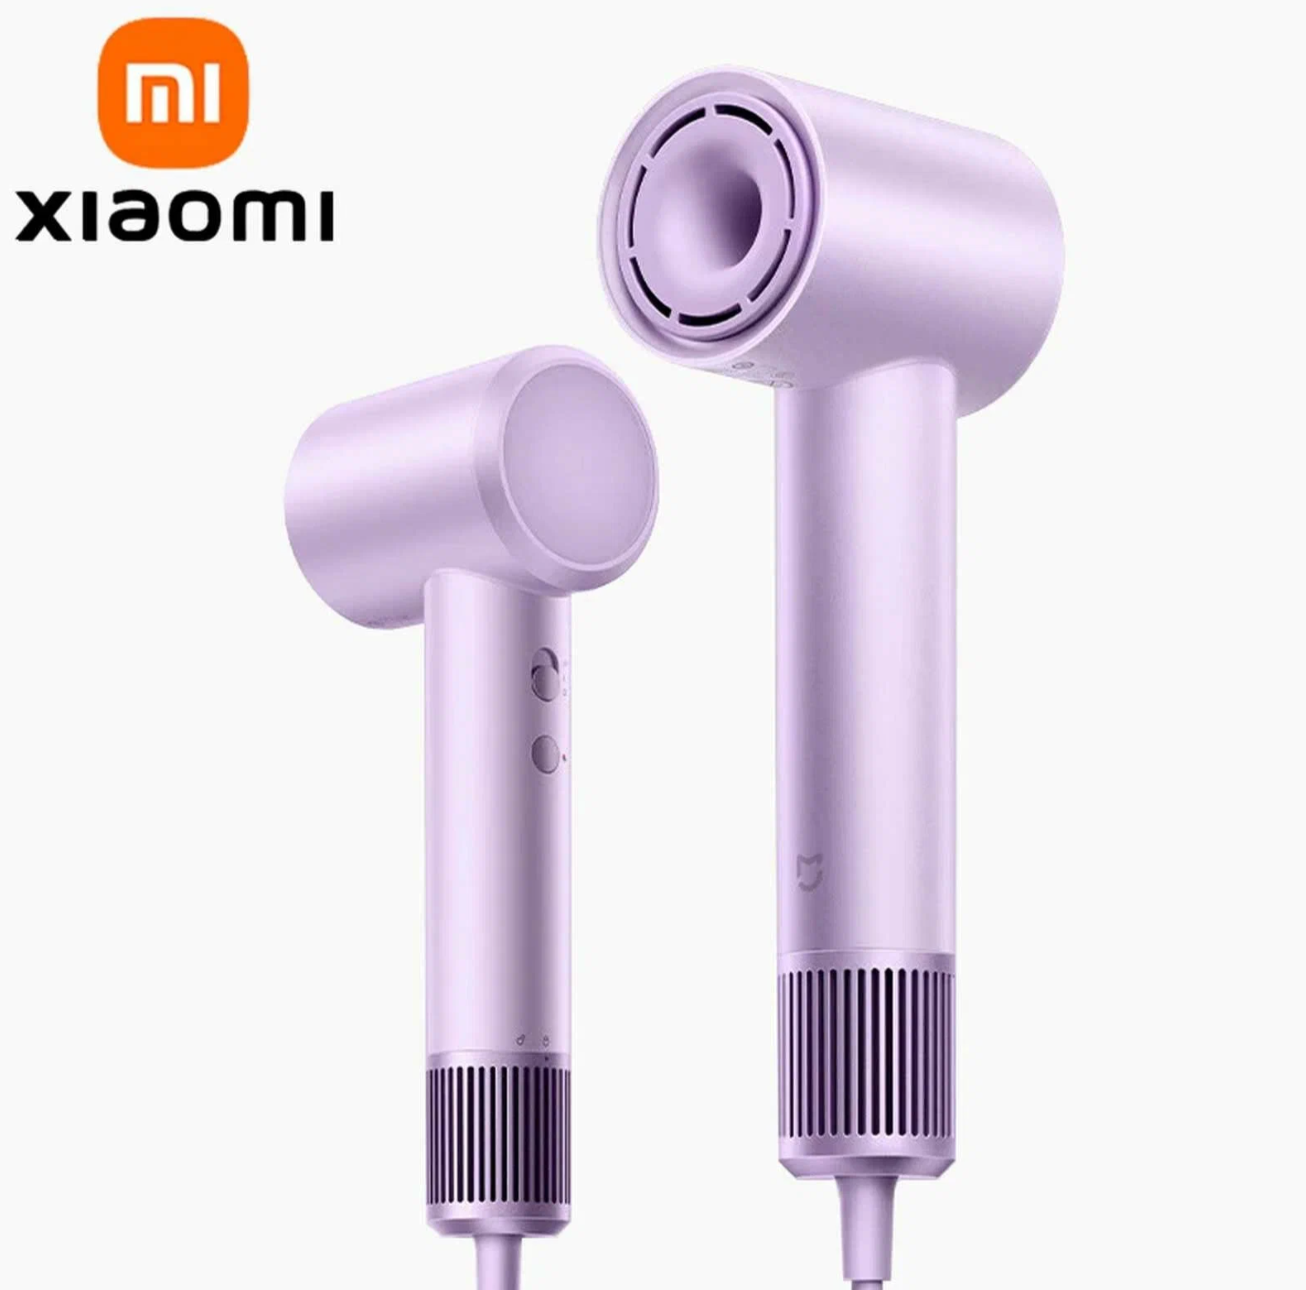 Фен для волос Xiaomi Mijia Dryer H501 (пурпурный, 1600Вт)